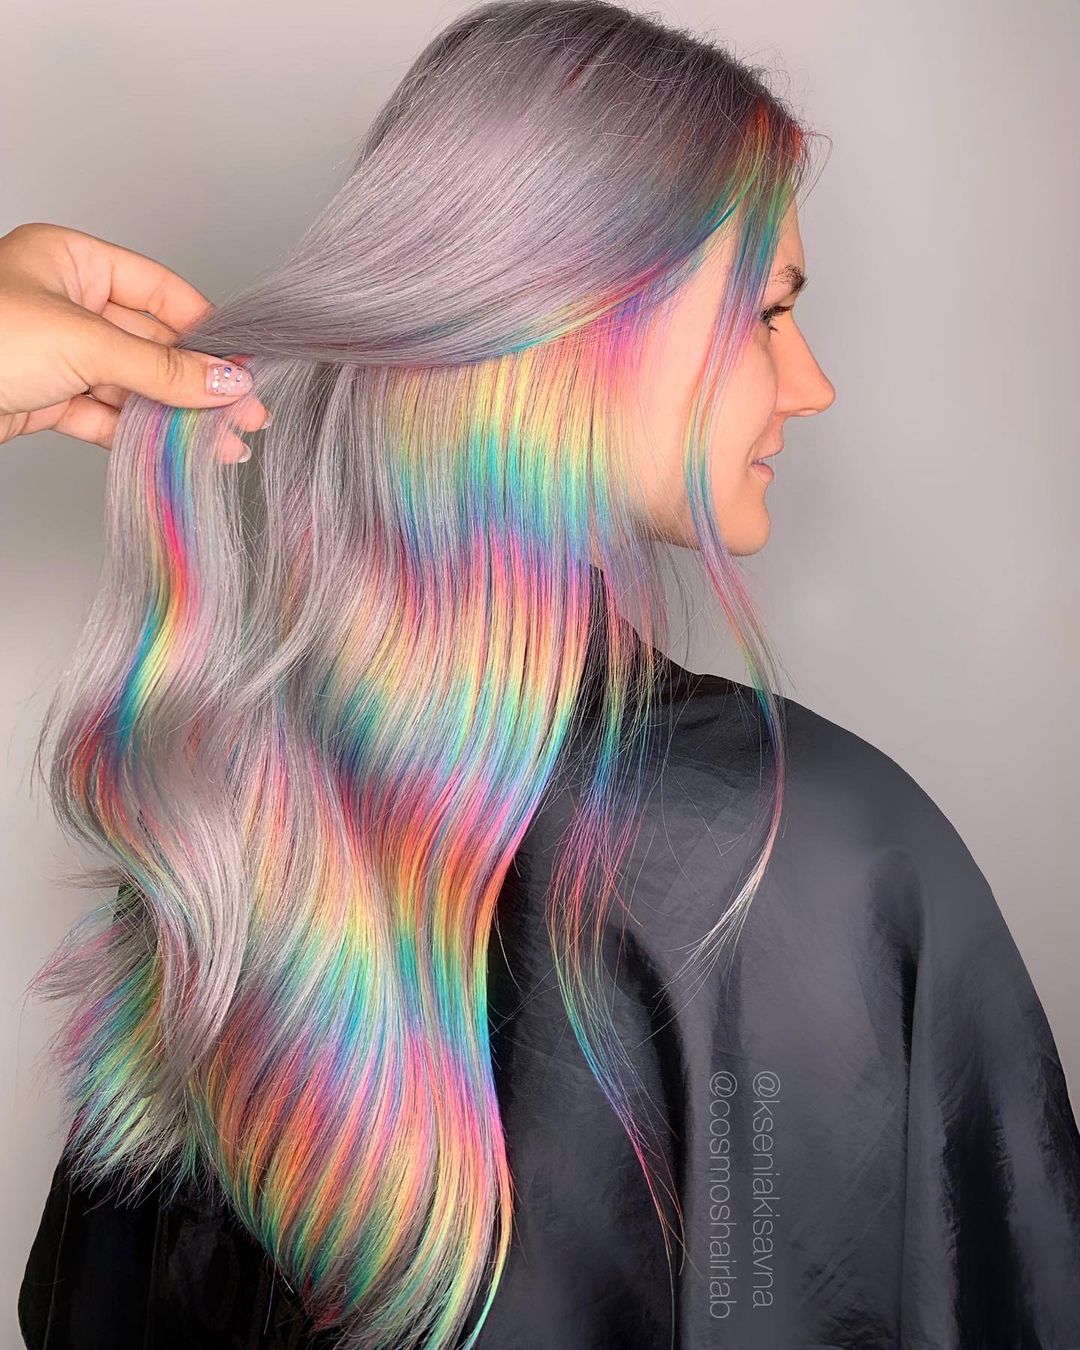 cabello arcoiris